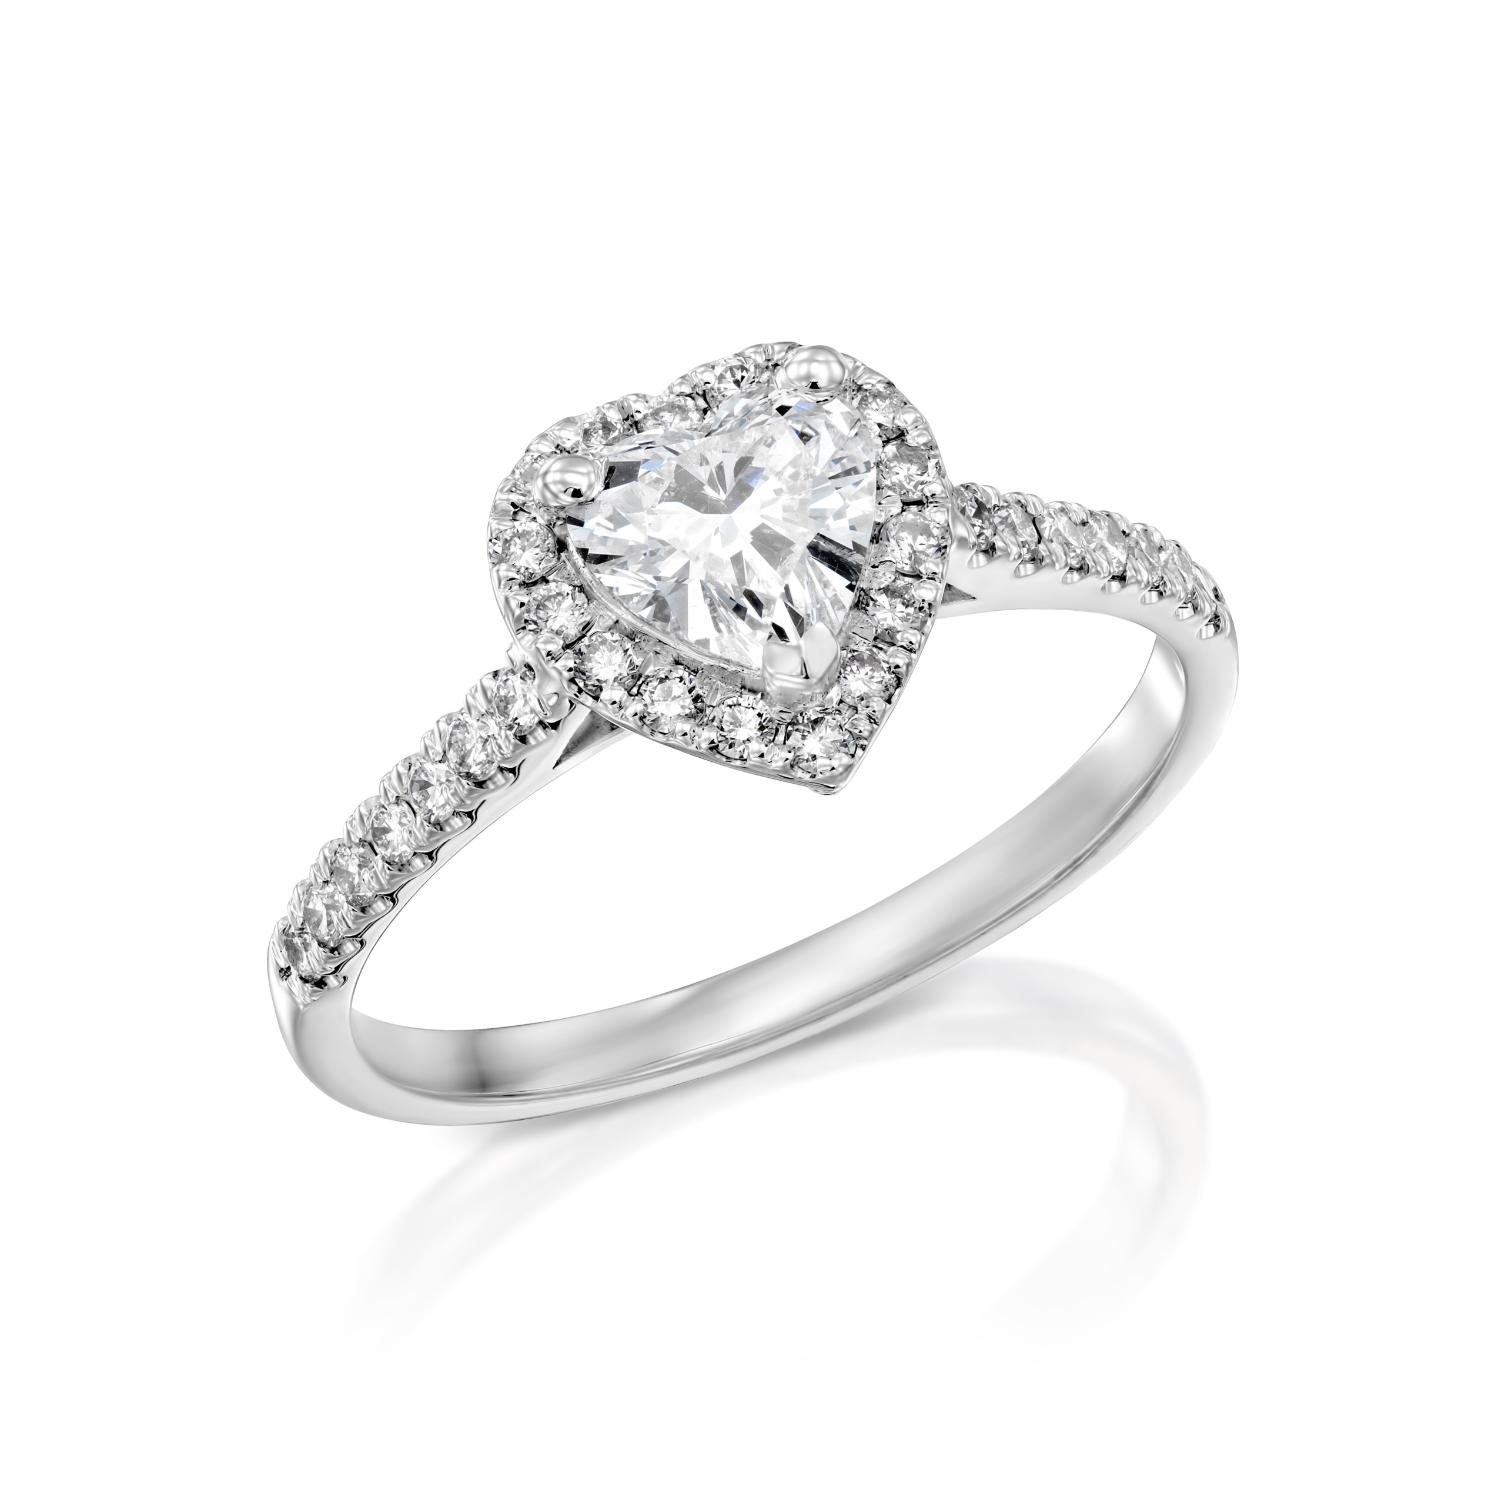 טבעת אירוסין נוצצת בצורת לב, טבעת דגם ליהי, עם הילה של יהלומים קטנים יותר משובצת על רצועת זהב לבן מלוטש.